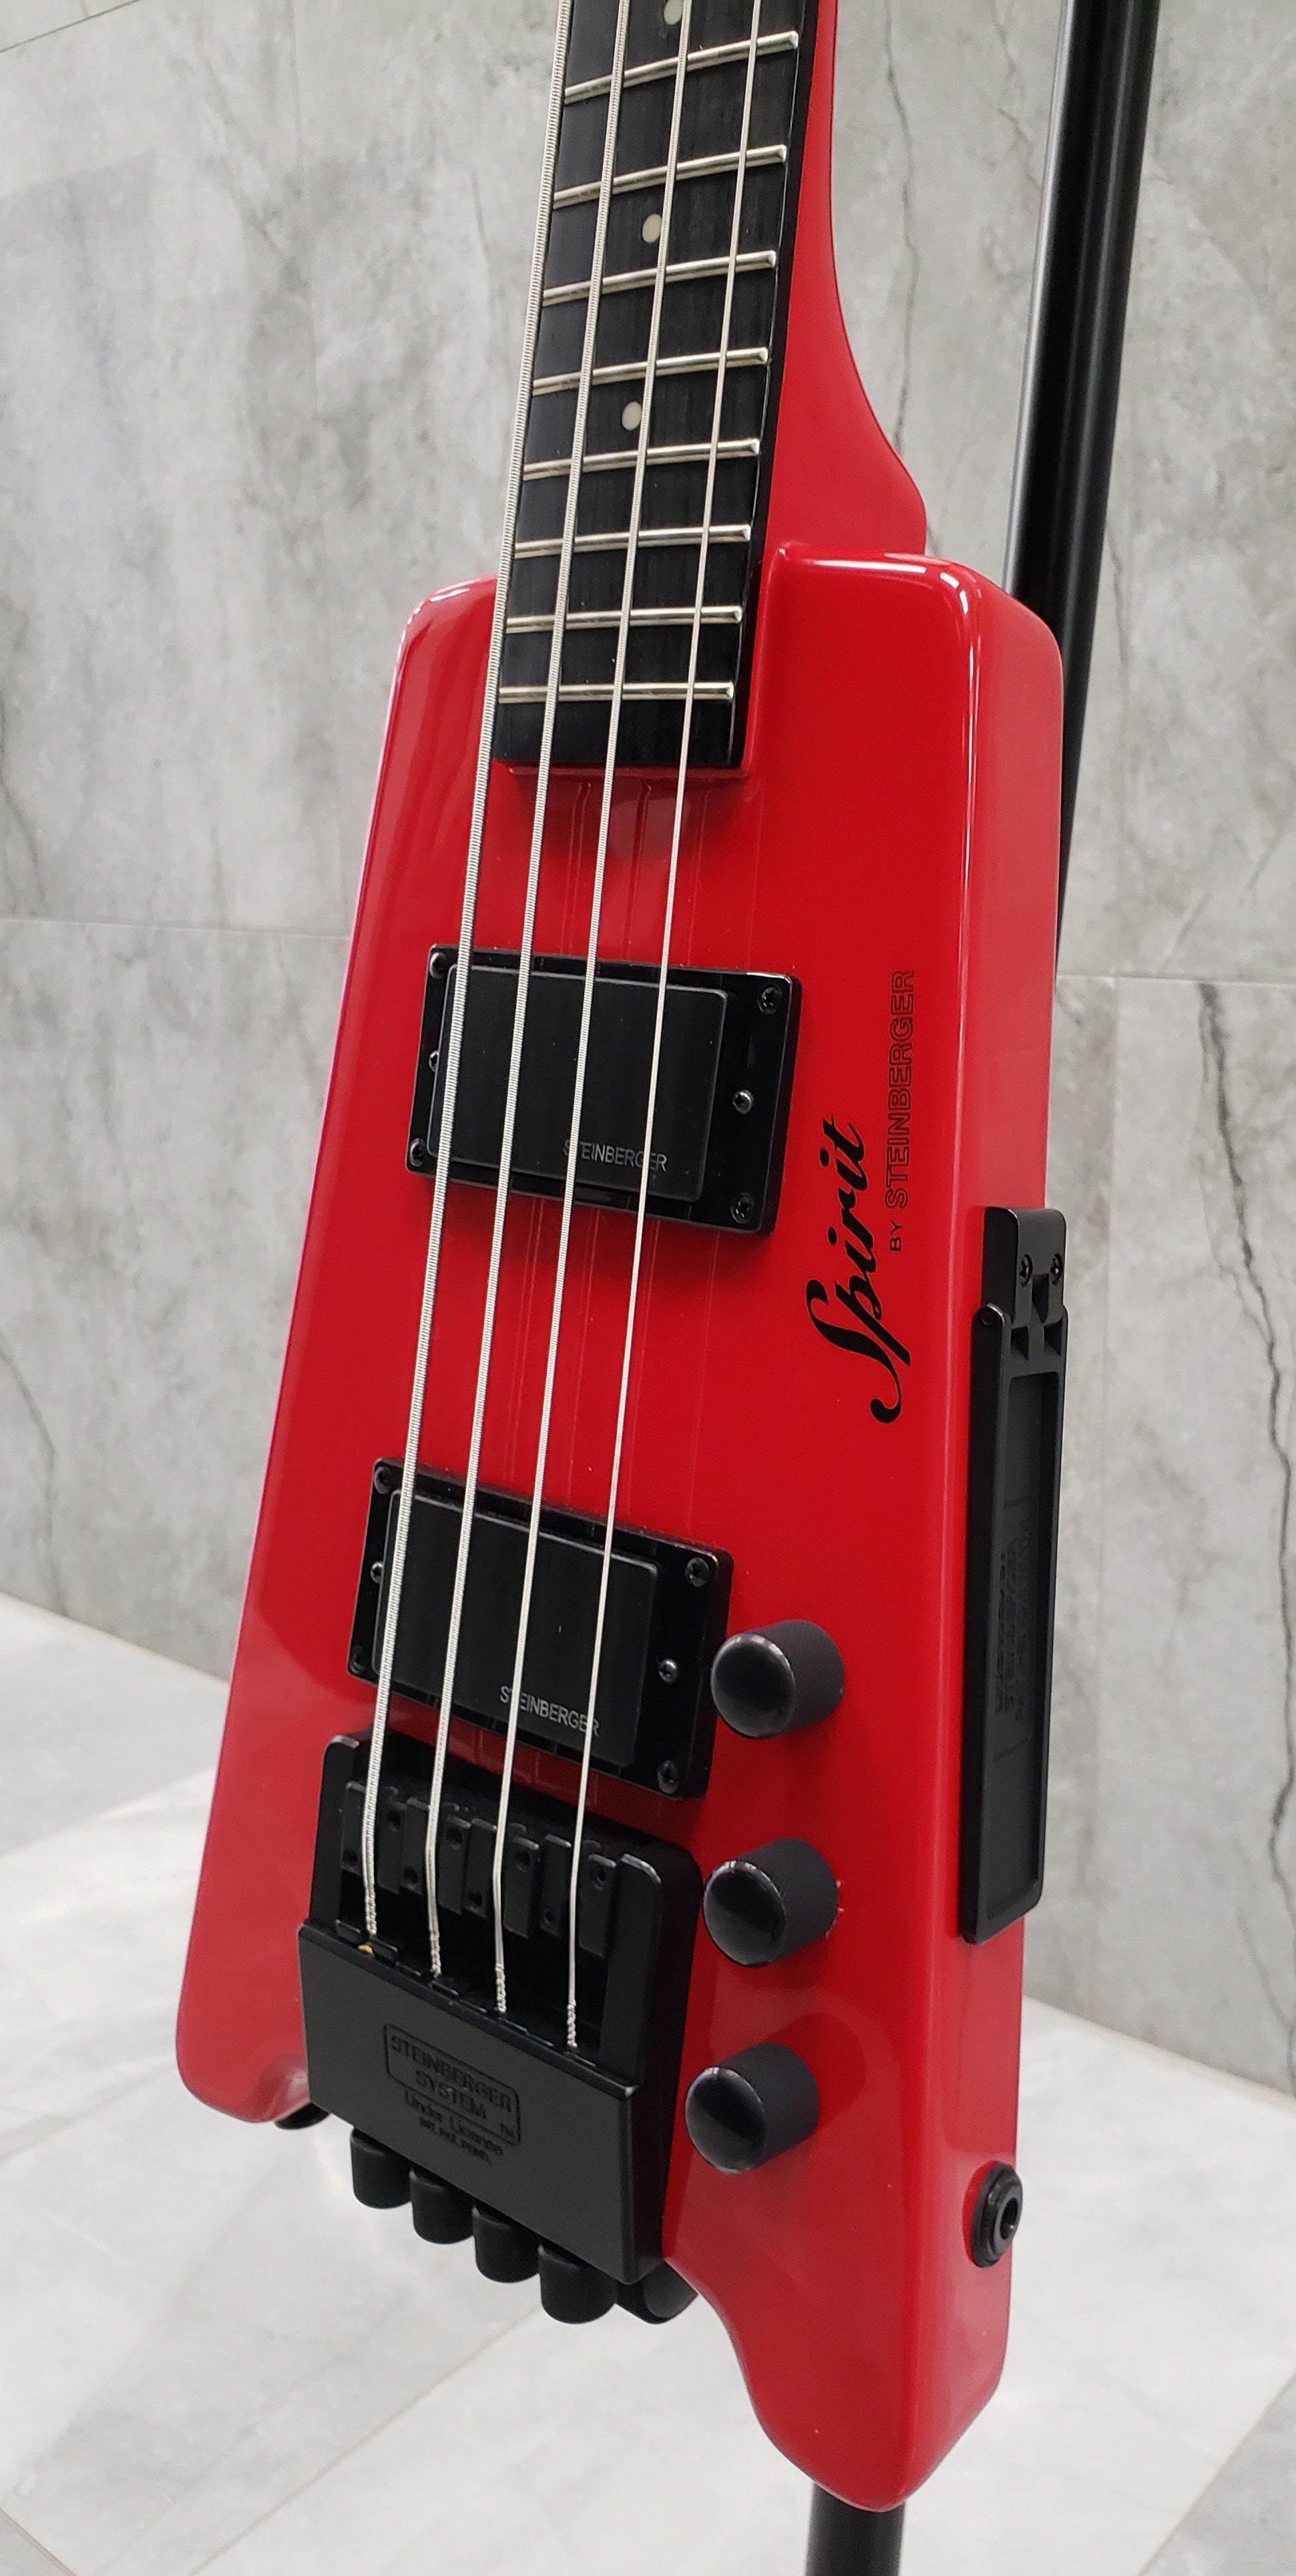 Steinberger Spirit XT-2 Standard Bass Guitar w/Gigbag - Red XTSTD4HRBH